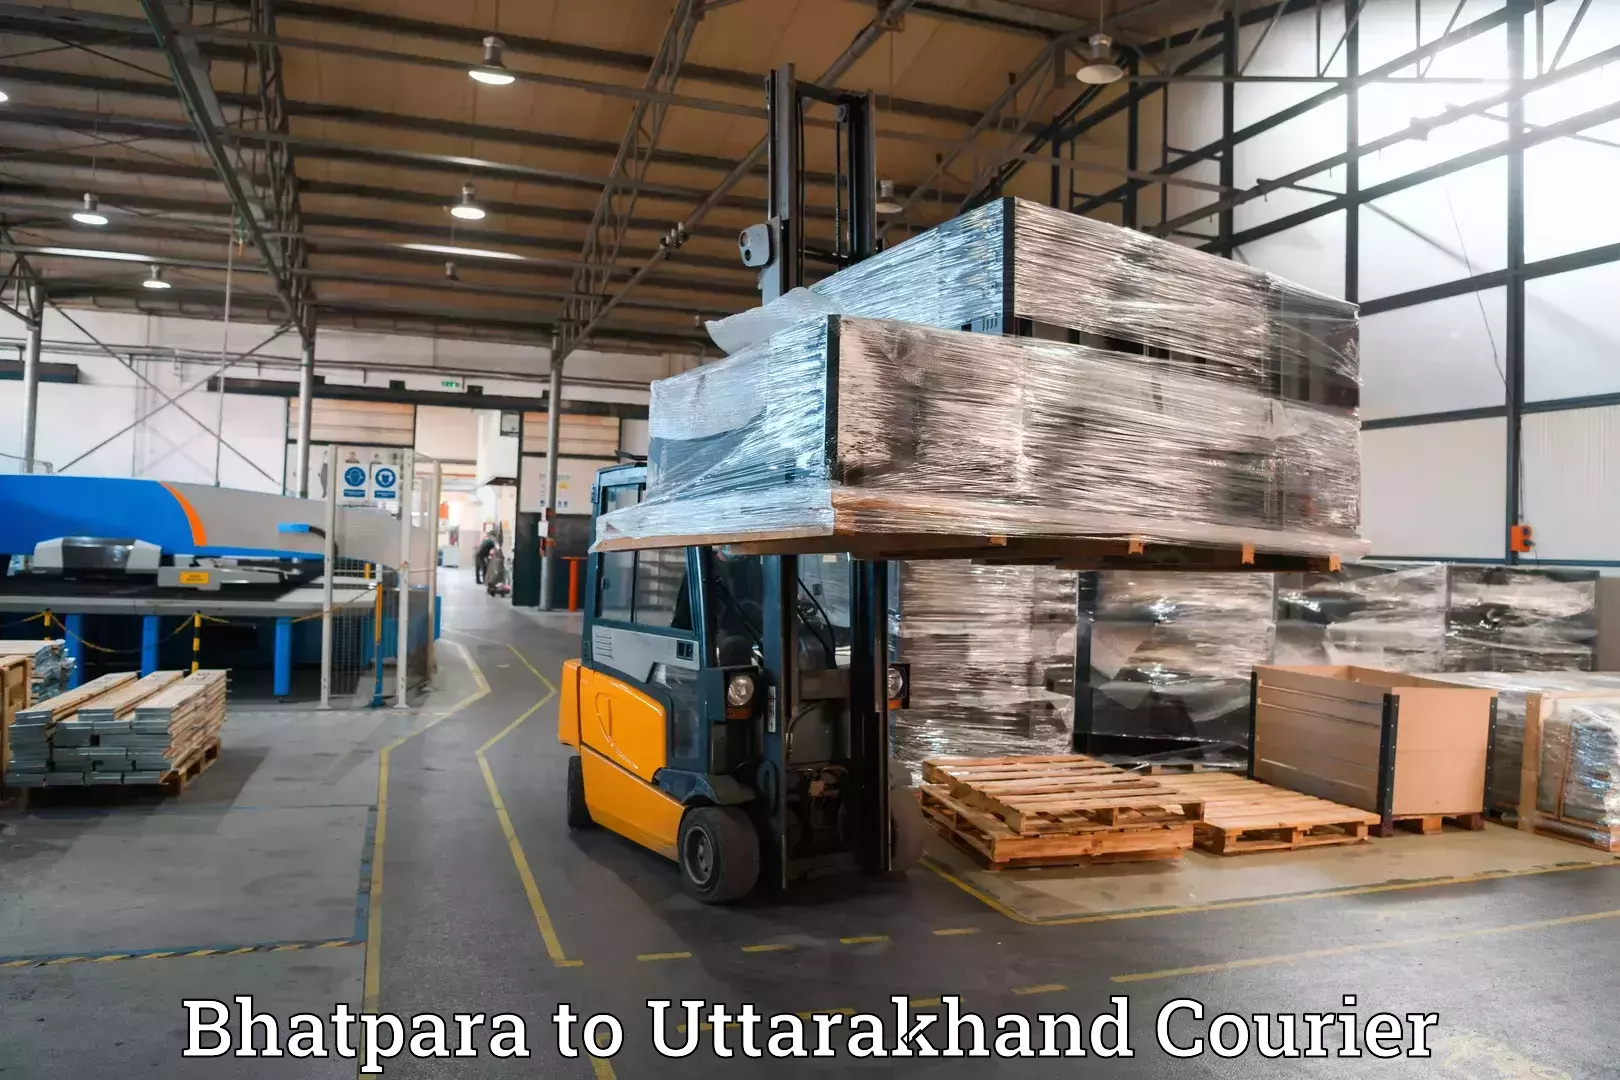 Baggage shipping service Bhatpara to Lansdowne